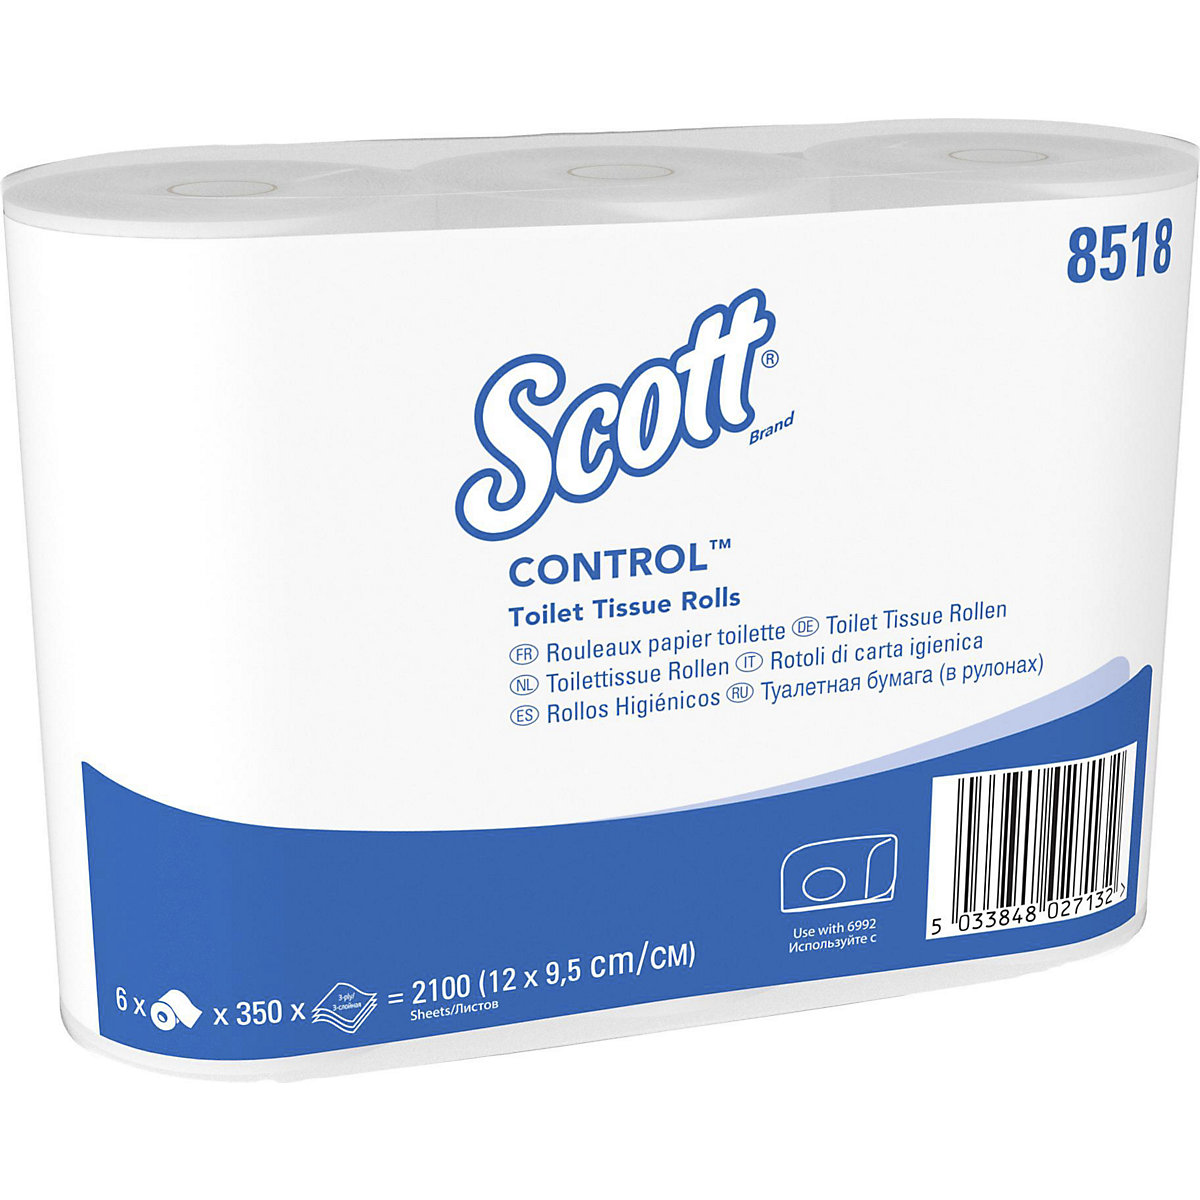 Standaard toiletpapier van Scott® CONTROL™ – Kimberly-Clark